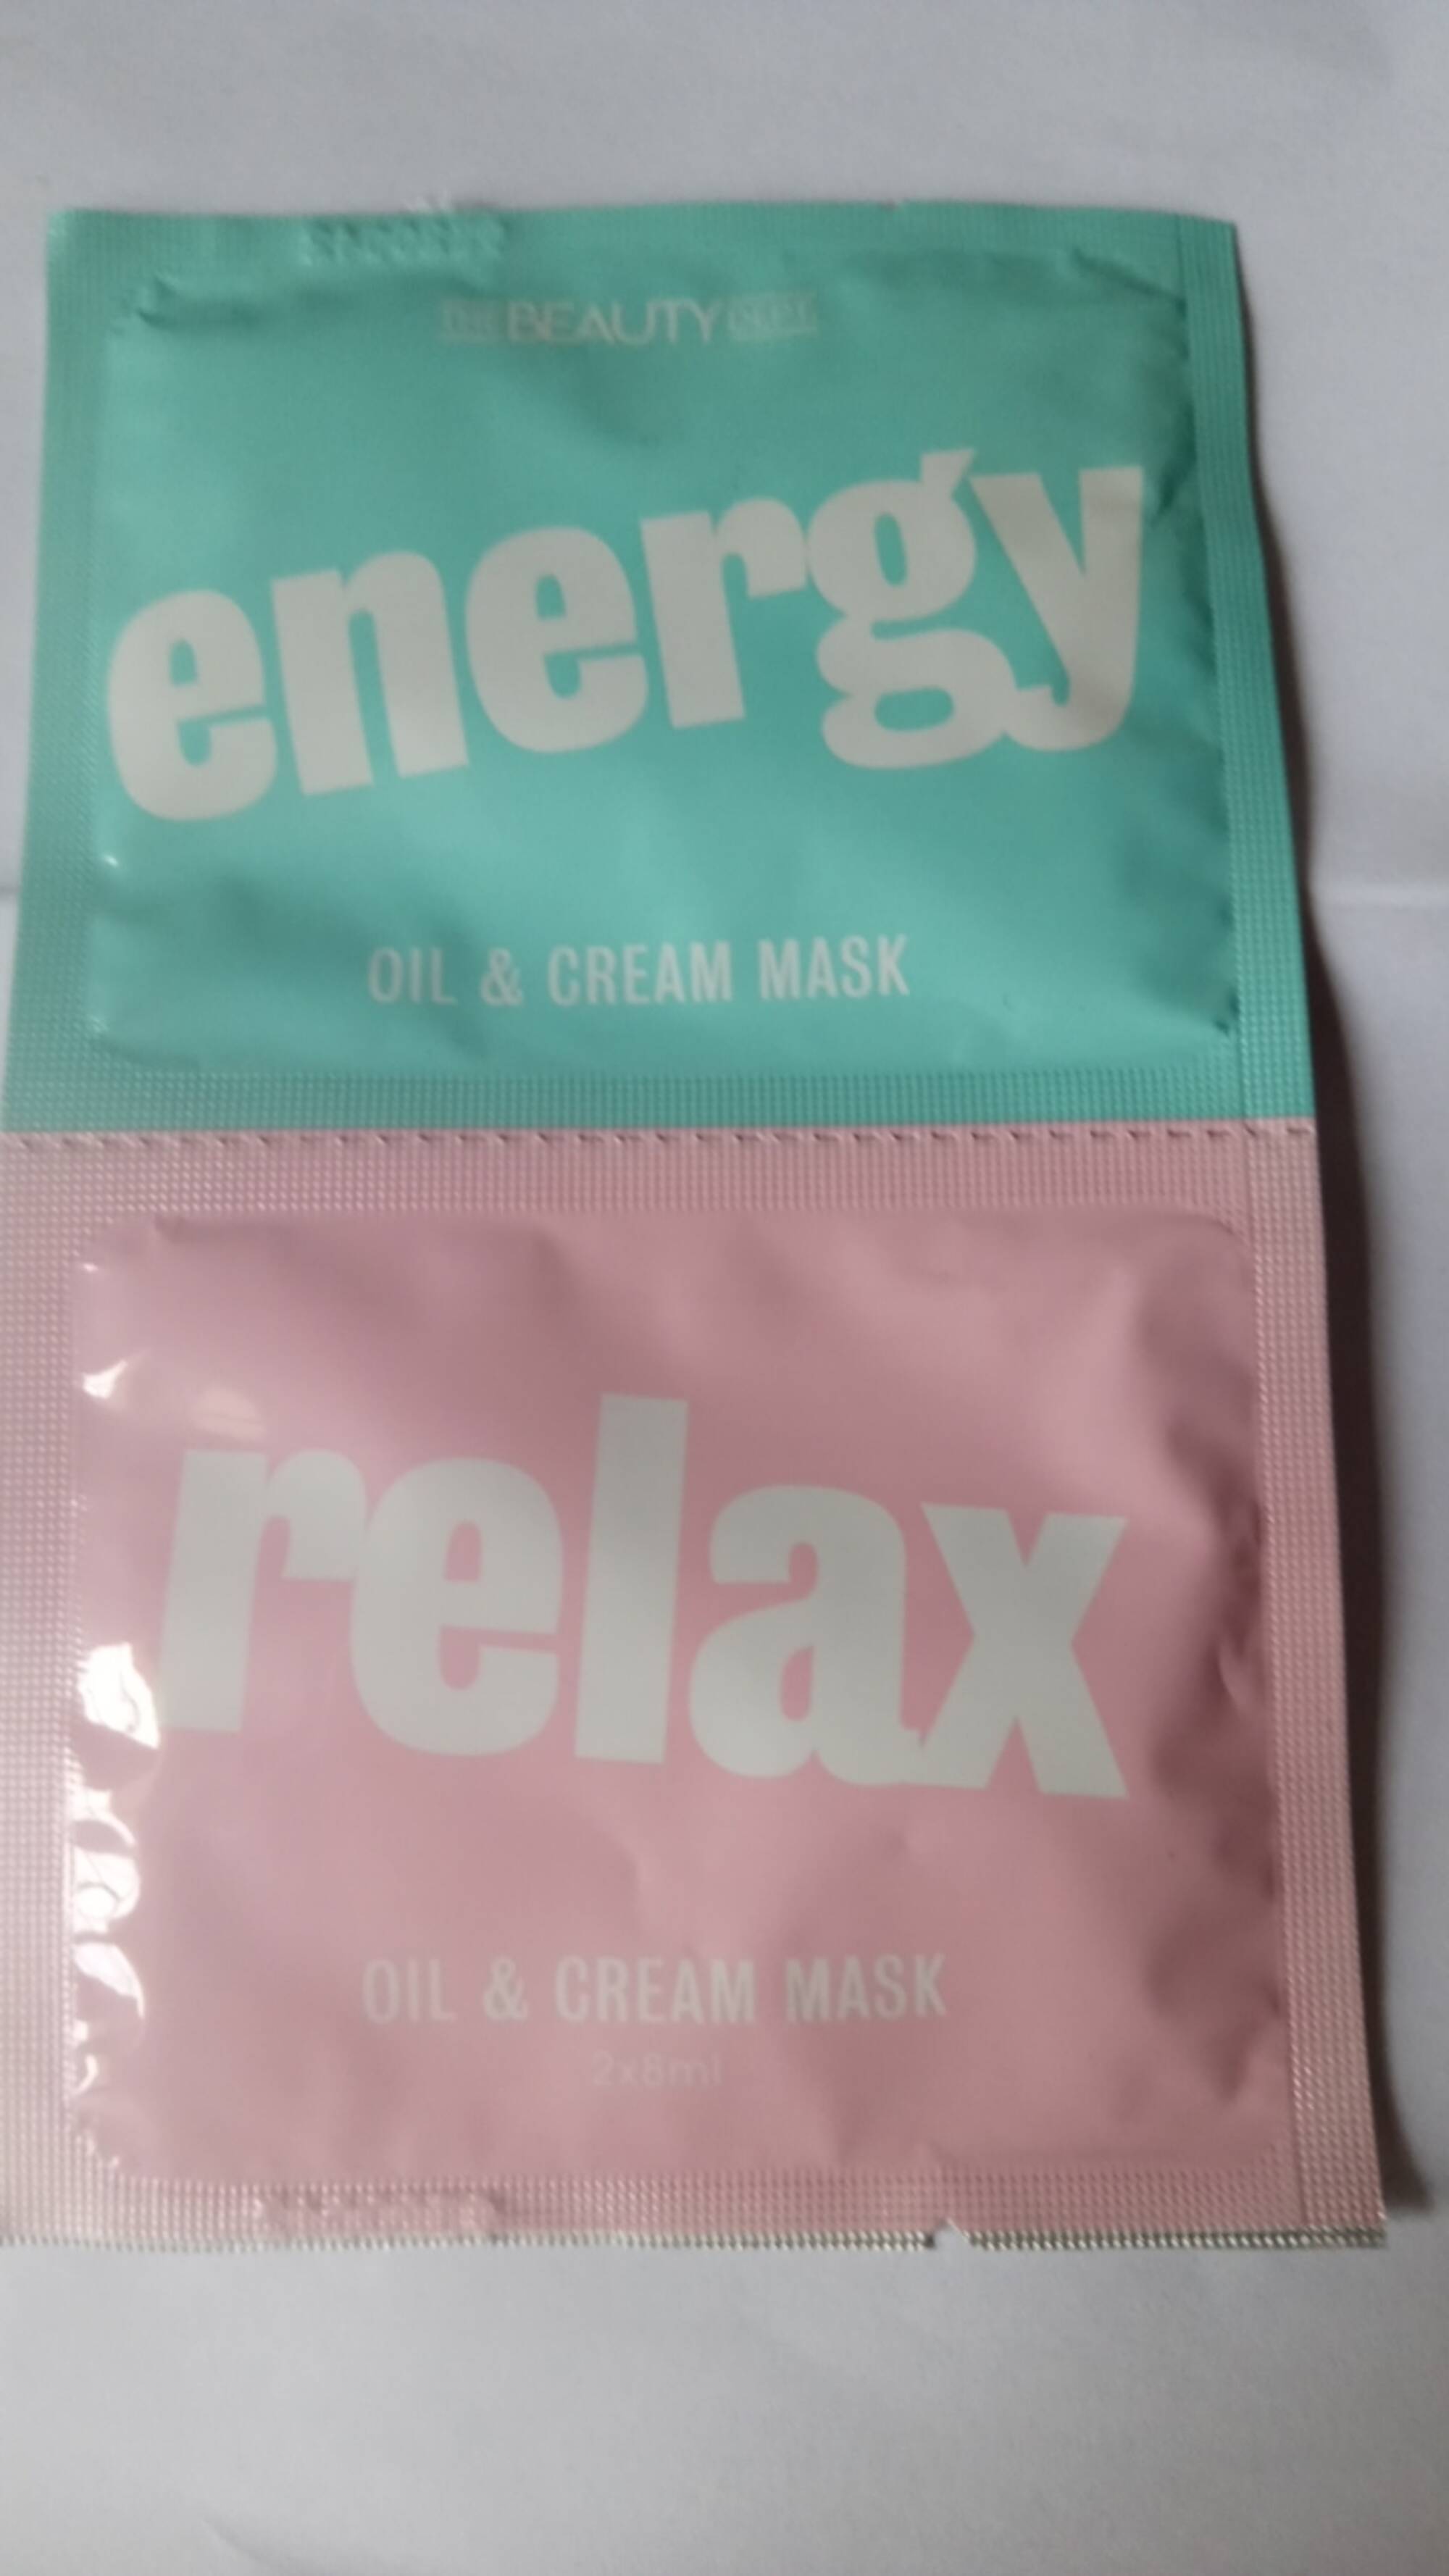 THE BEAUTY DEPT - Energy & relax -  Oil & cream mask